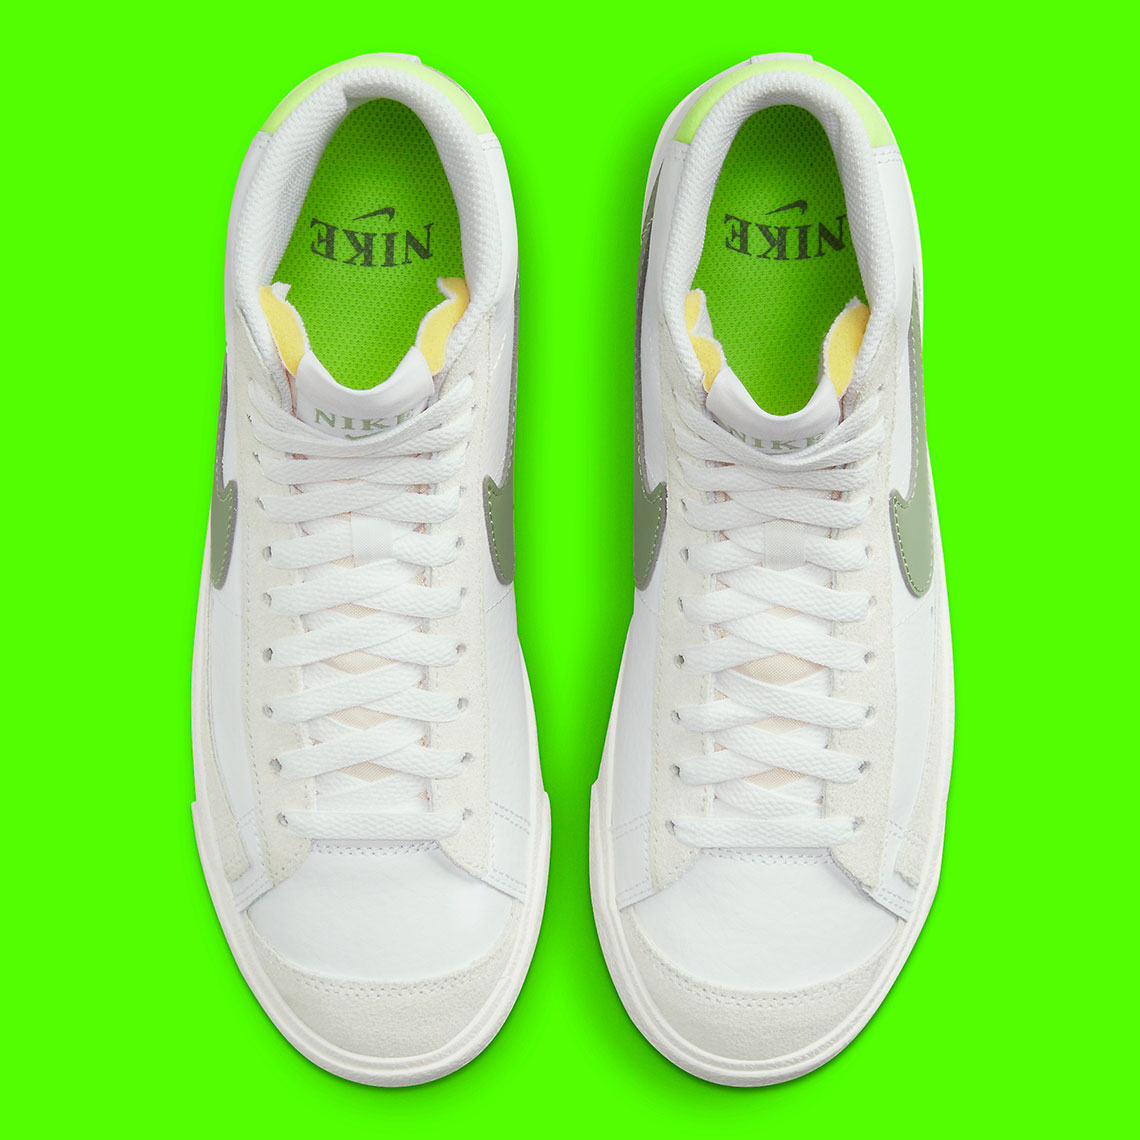 Nike nike dunk releases 2015 2017 list full time show White Green Volt Fj4740 100 8